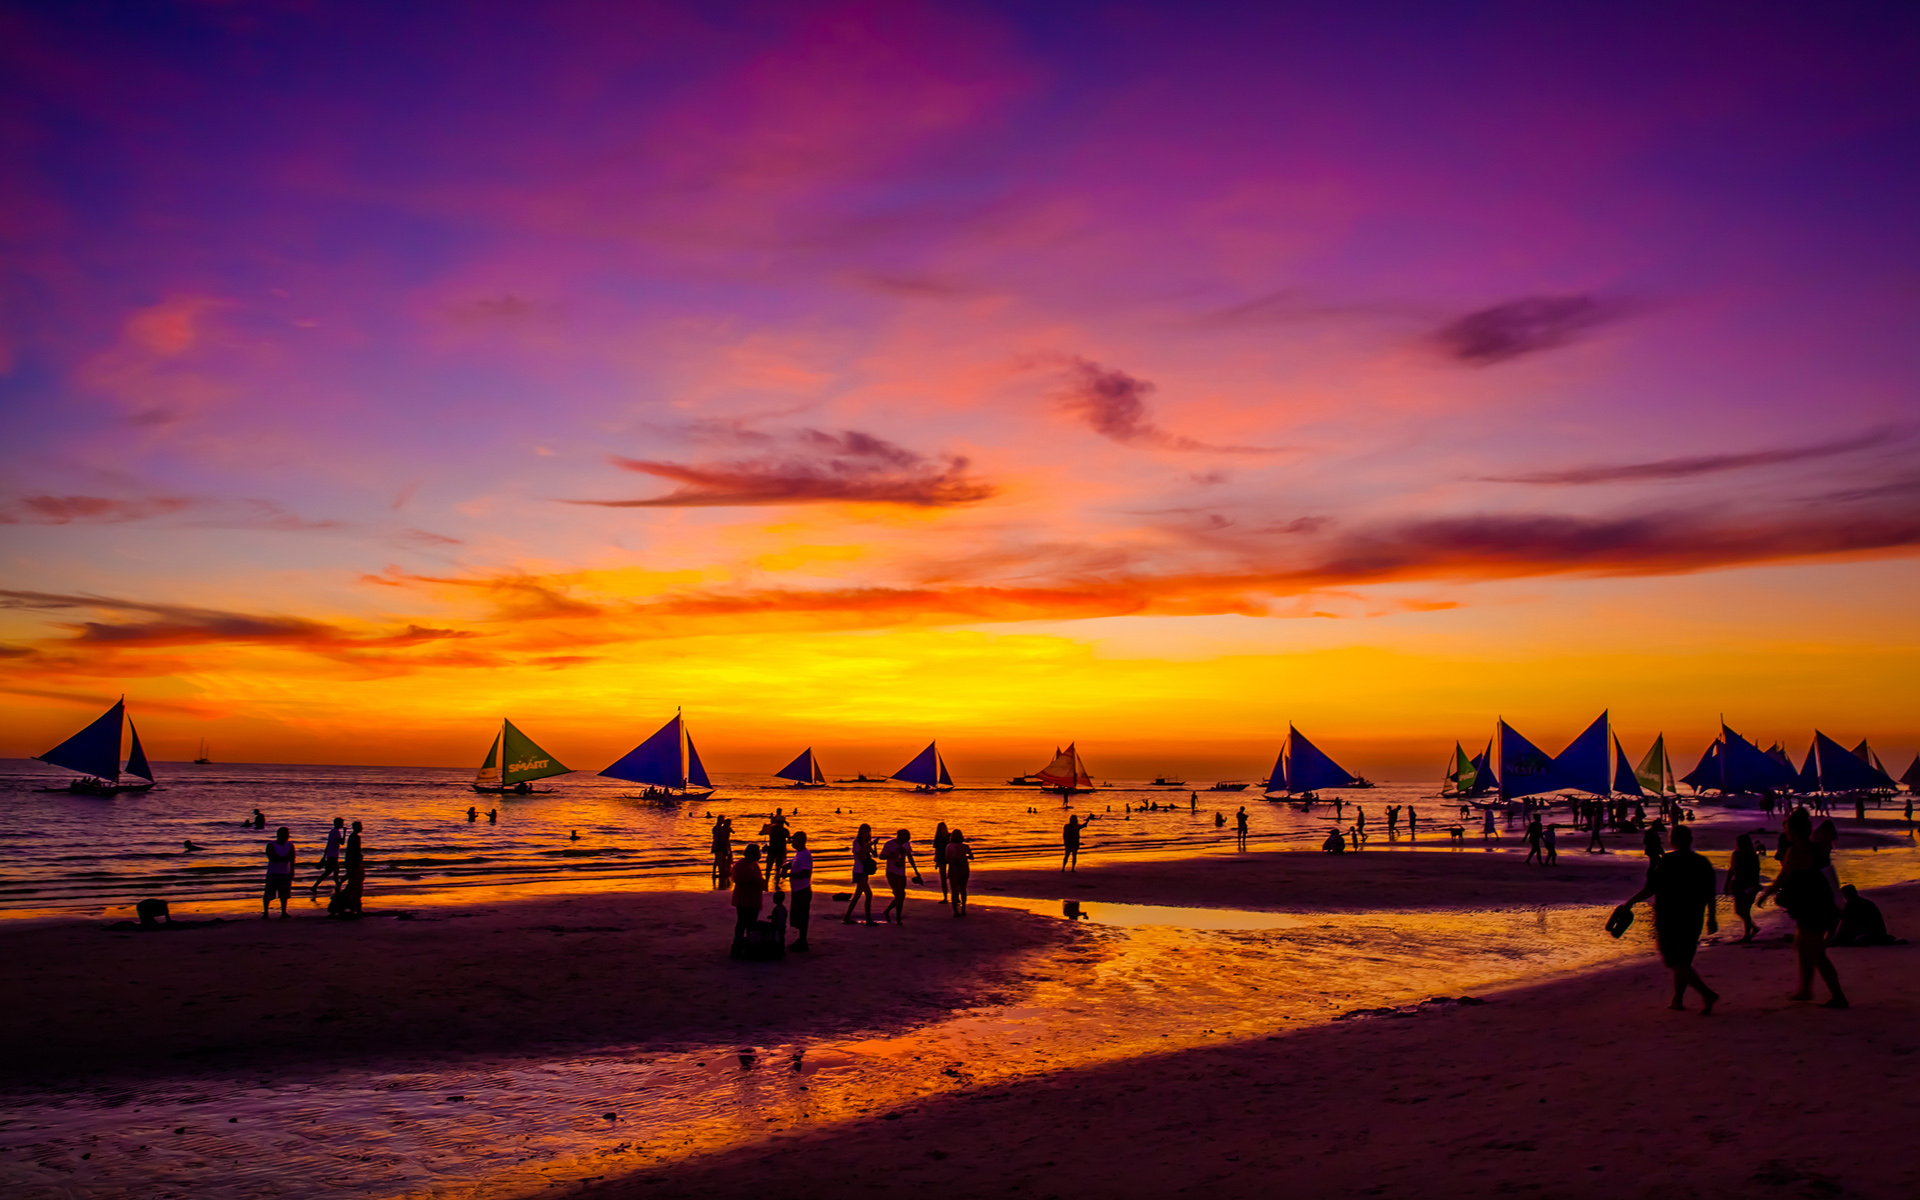 落日风景图片 菲律宾长滩岛日落晚霞风景图片(4)